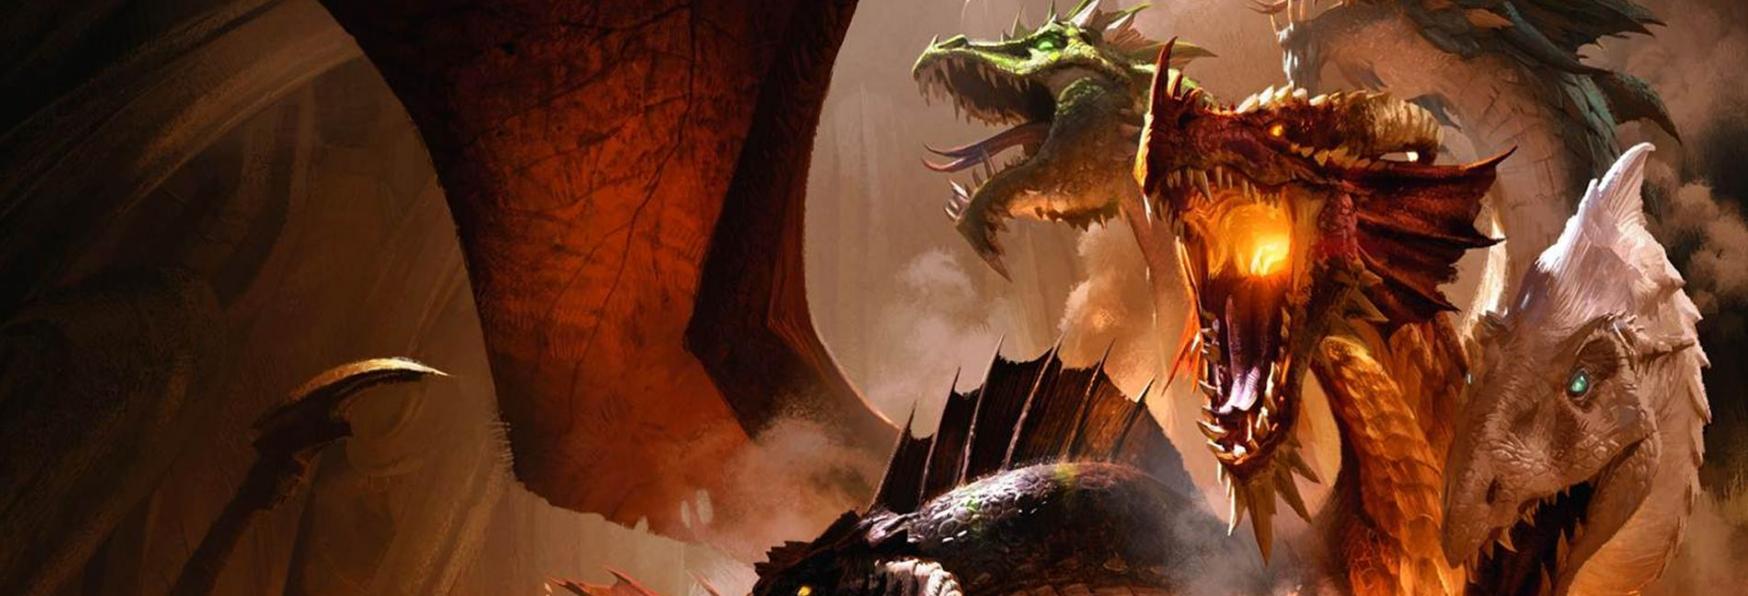 Dungeons & Dragons: Rawson Marshall (Red Notice) sarà il Regista dell’inedita Serie TV tratta dal Gioco Fantasy